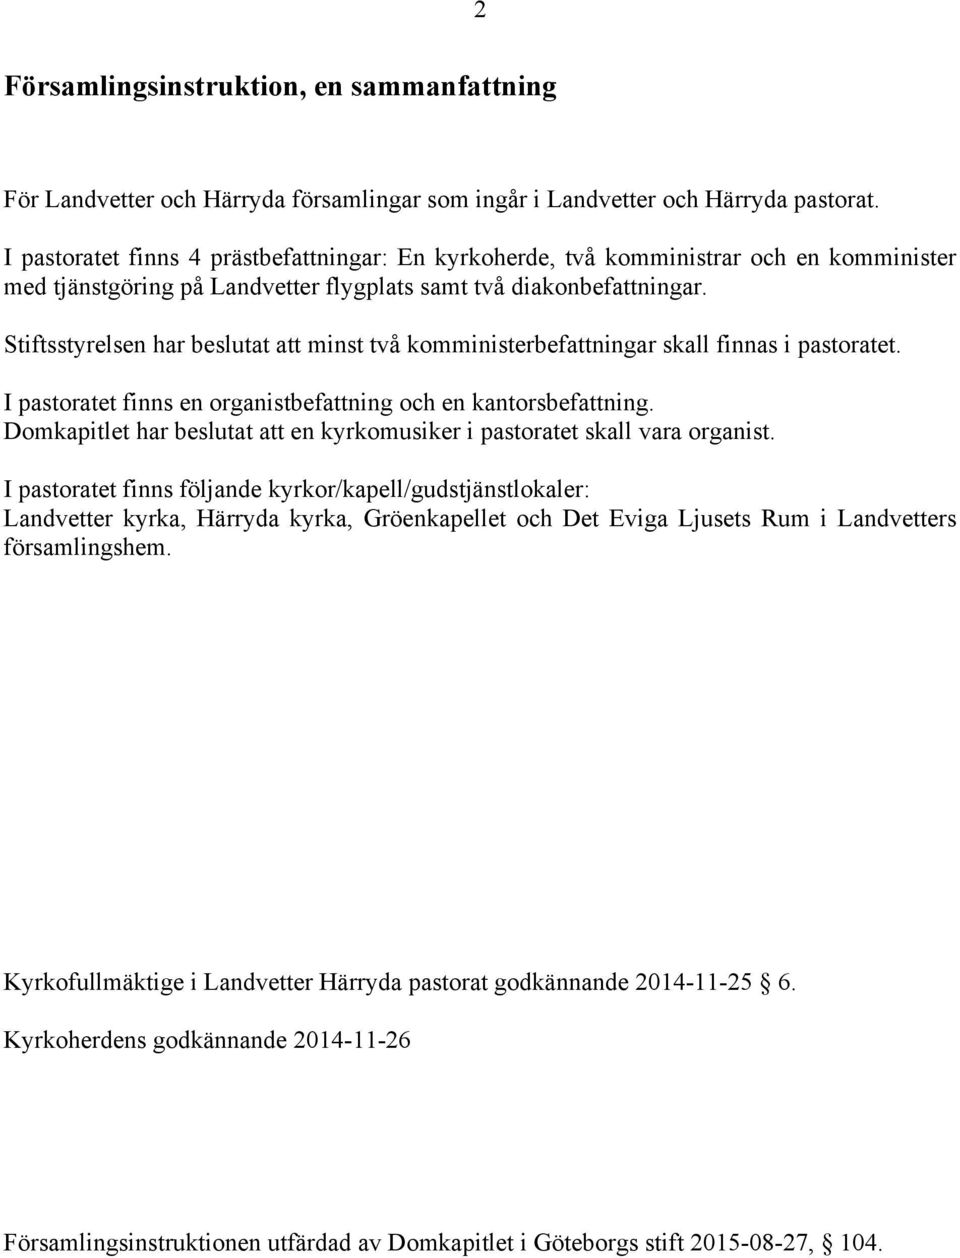 Antagen av Kyrkorådet Församlingsinstruktion Landvetter Härryda pastorat -  PDF Free Download